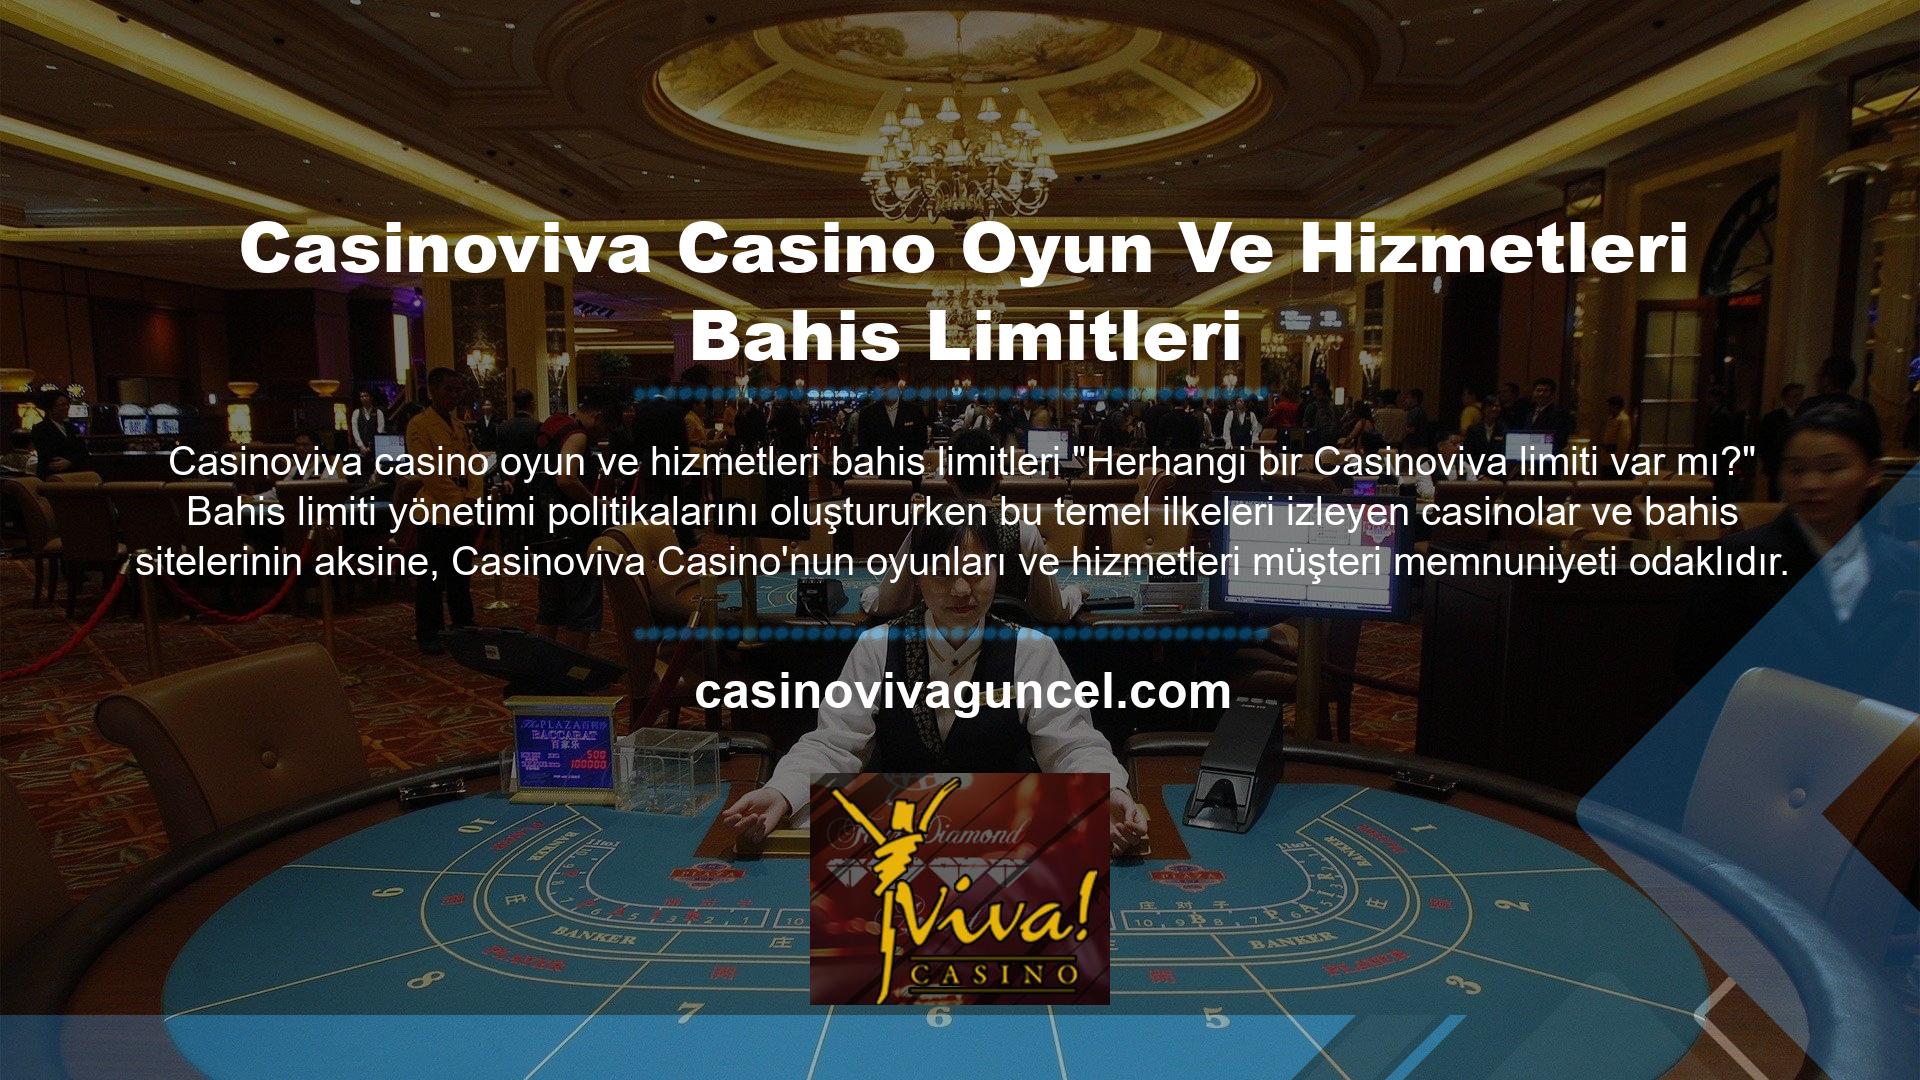 Casinoviva casino oyun ve hizmetleri bahis limitleri